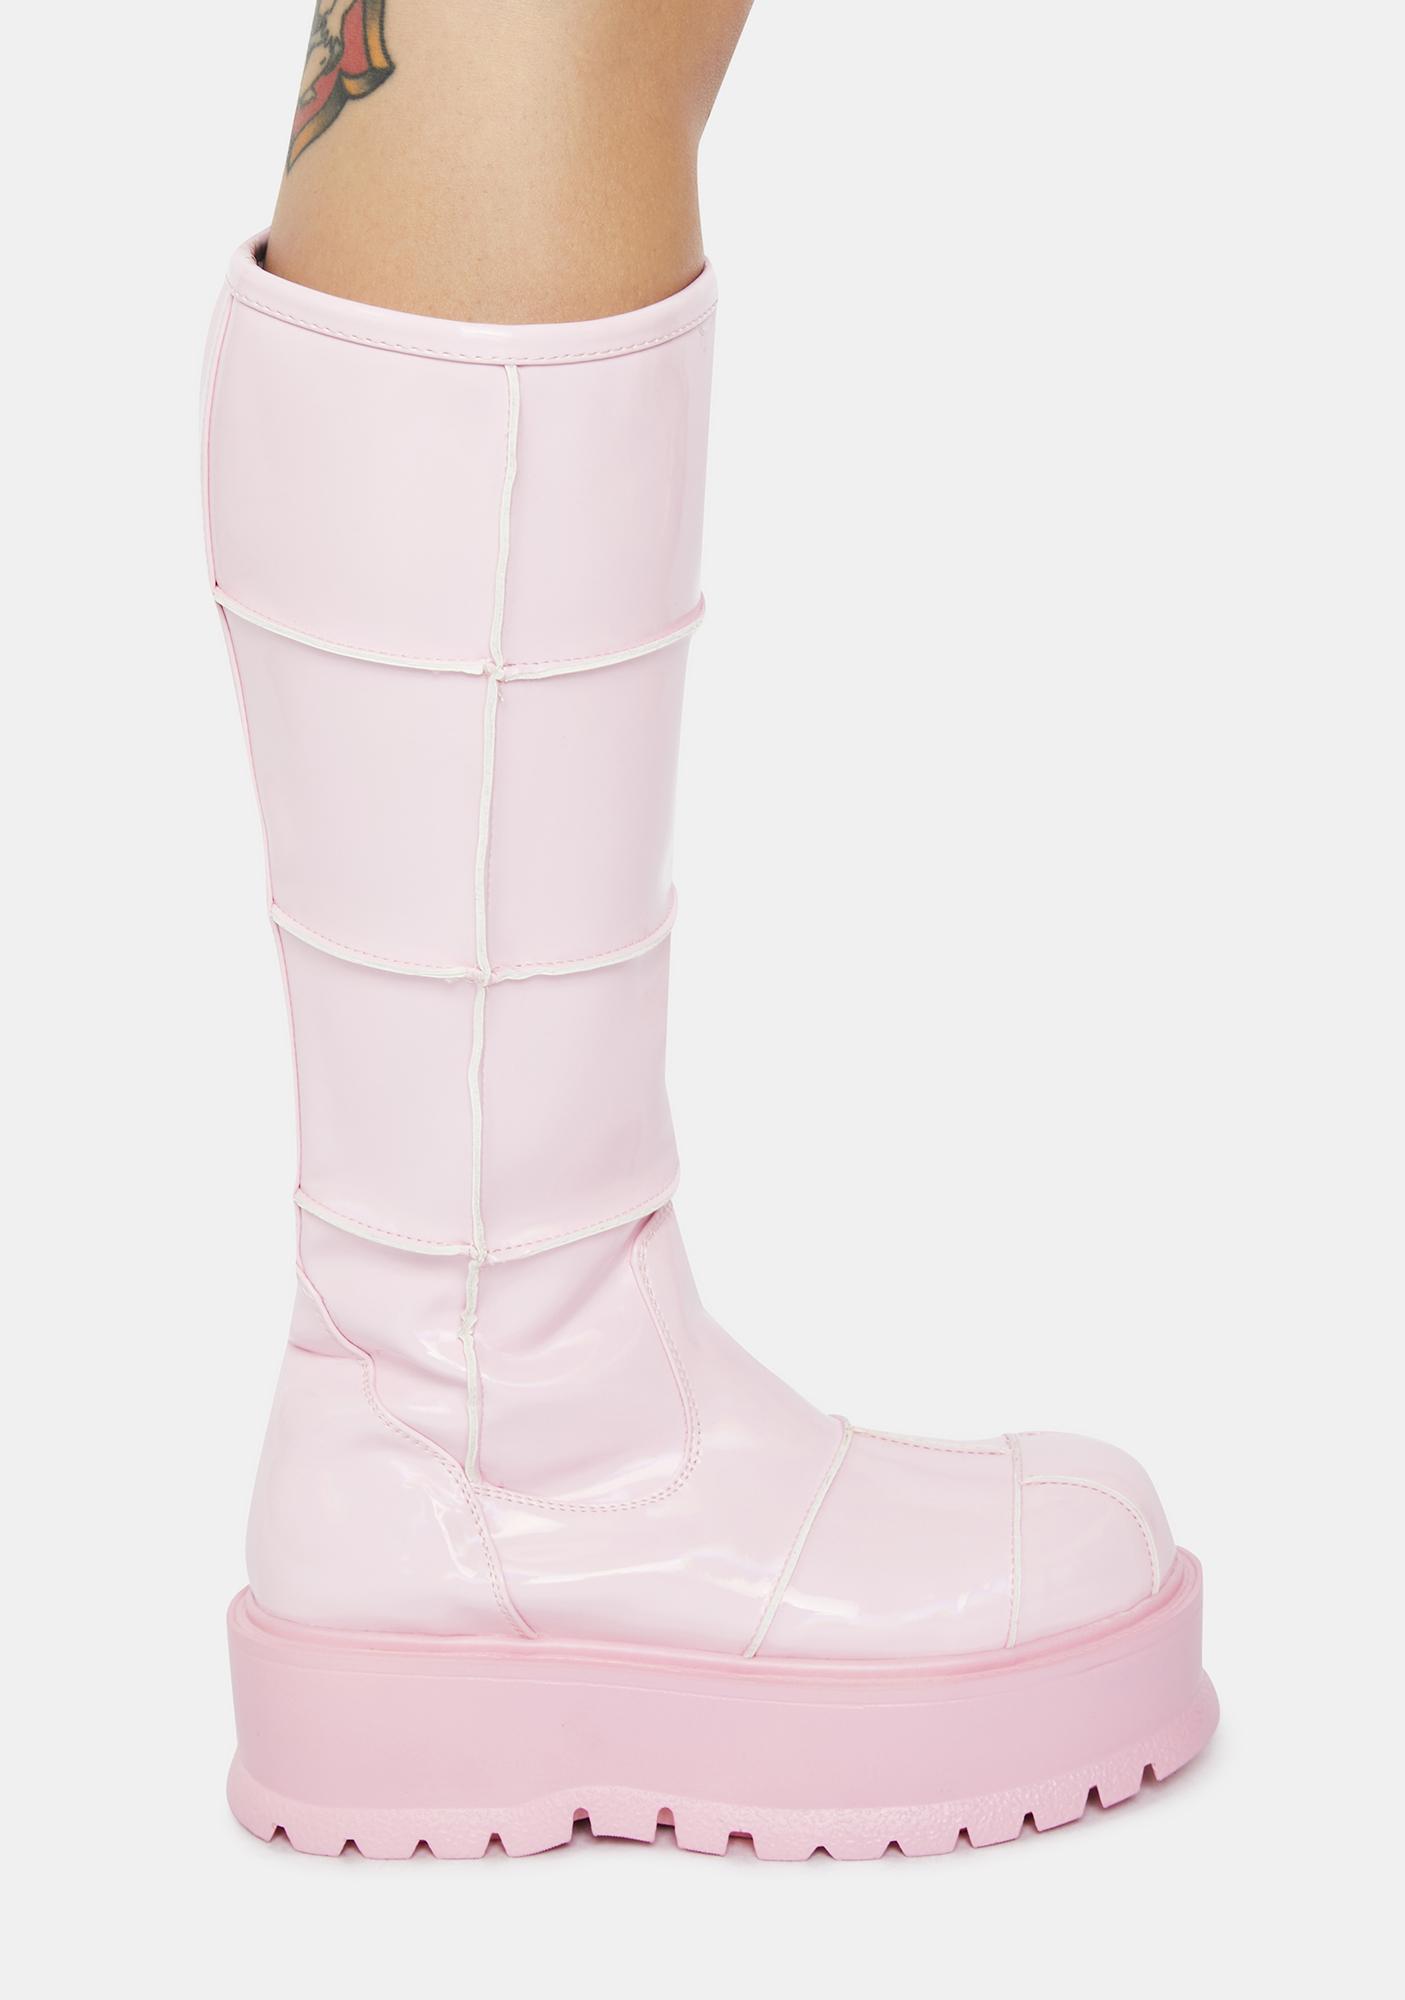 Demonia Slacker-230 Knee High Boots - Pastel Pink | Dolls Kill